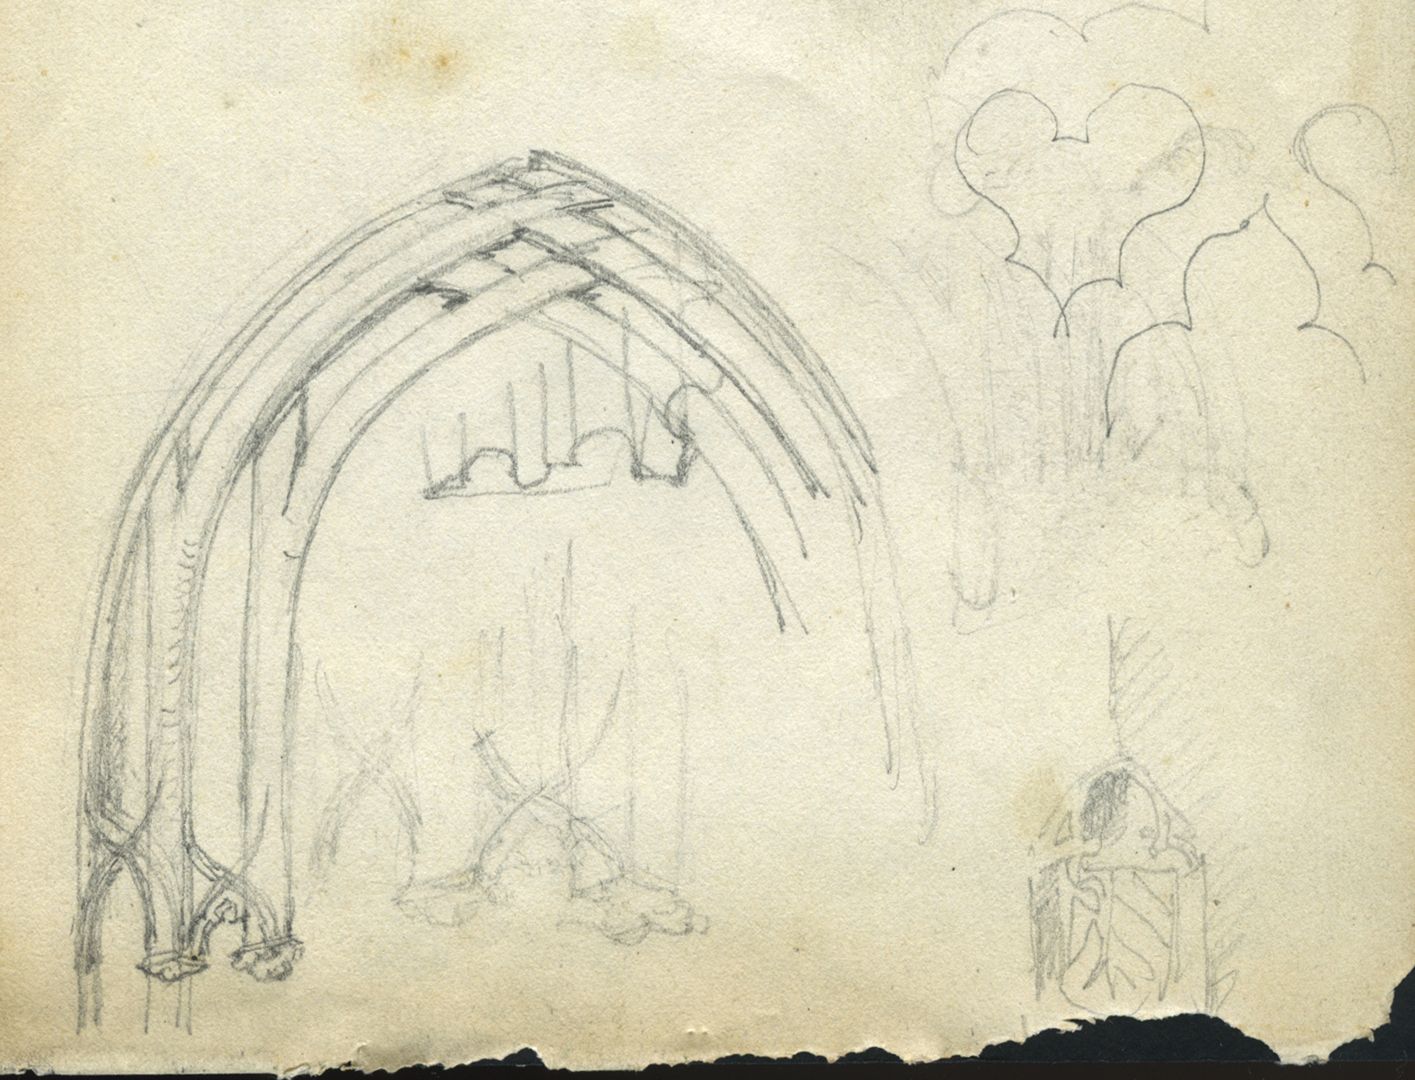 Skizzenbuch von Paul Ritter Nürnberg, Unschlitthaus, Portaldetails, untere Blatthälfte, unten rechts die SW-Ecke mit Stadtwappen und Astwerk